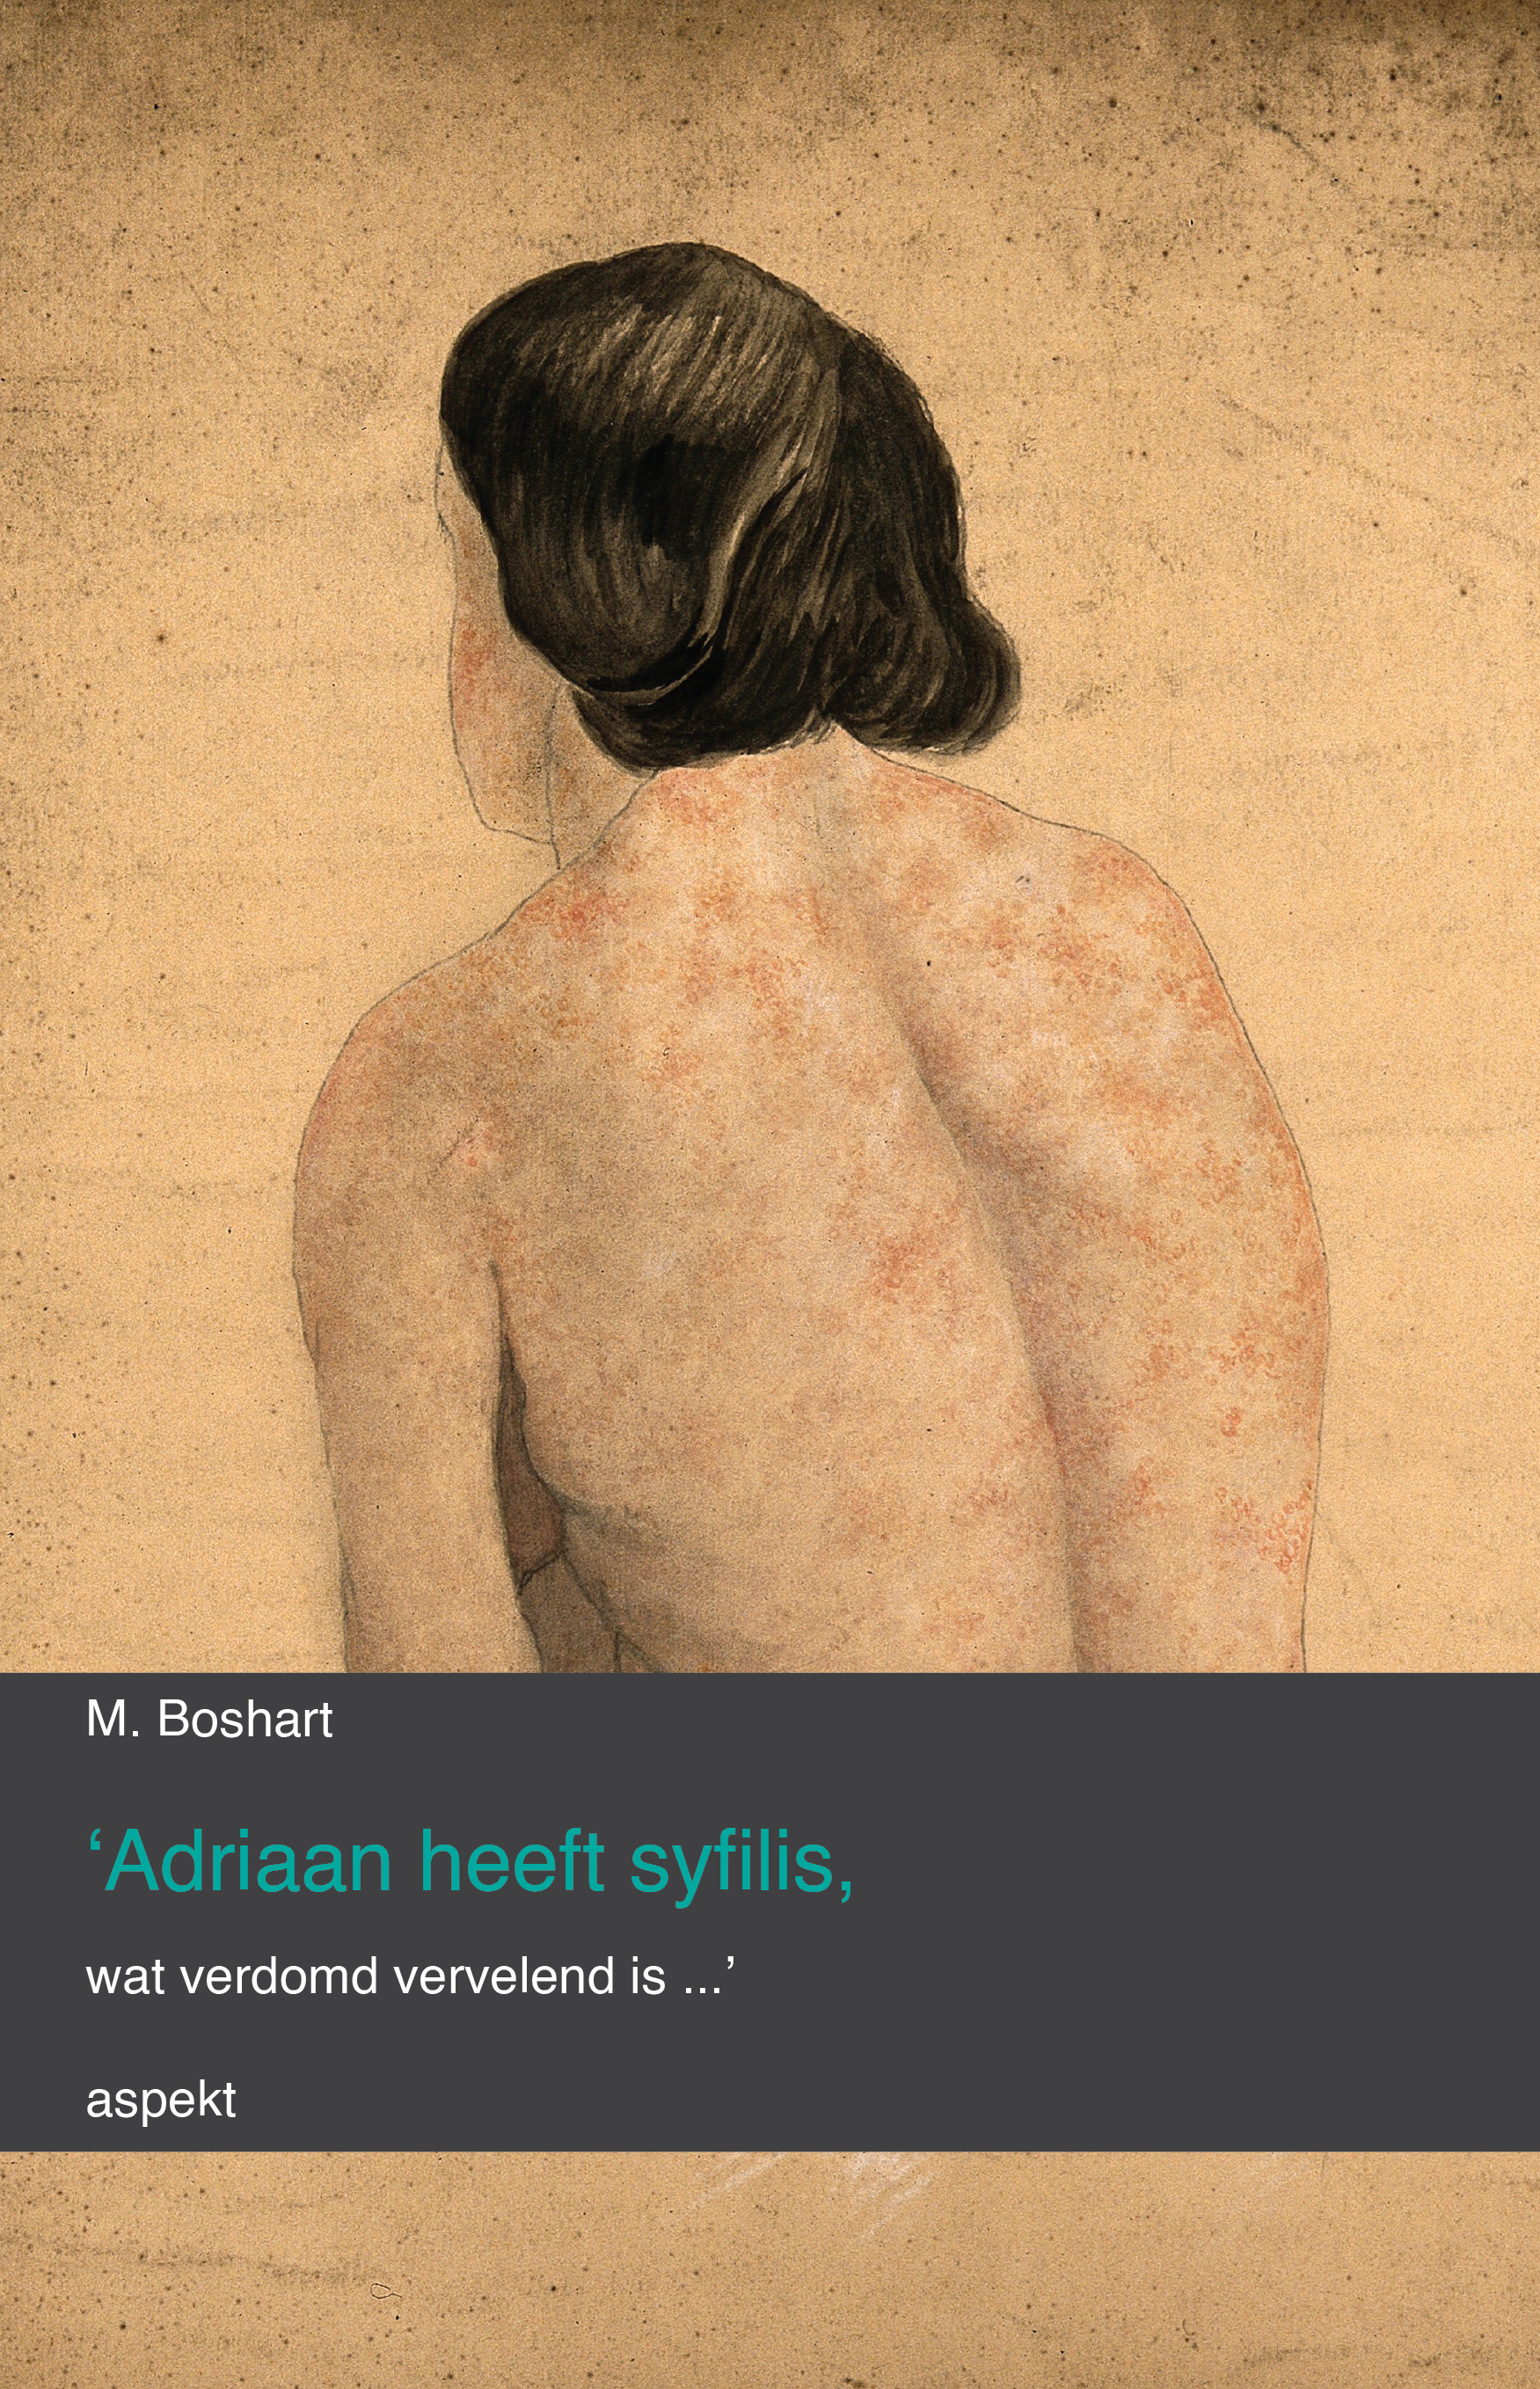 'Adriaan heeft syfilis, wat verdomd vervelend is...'